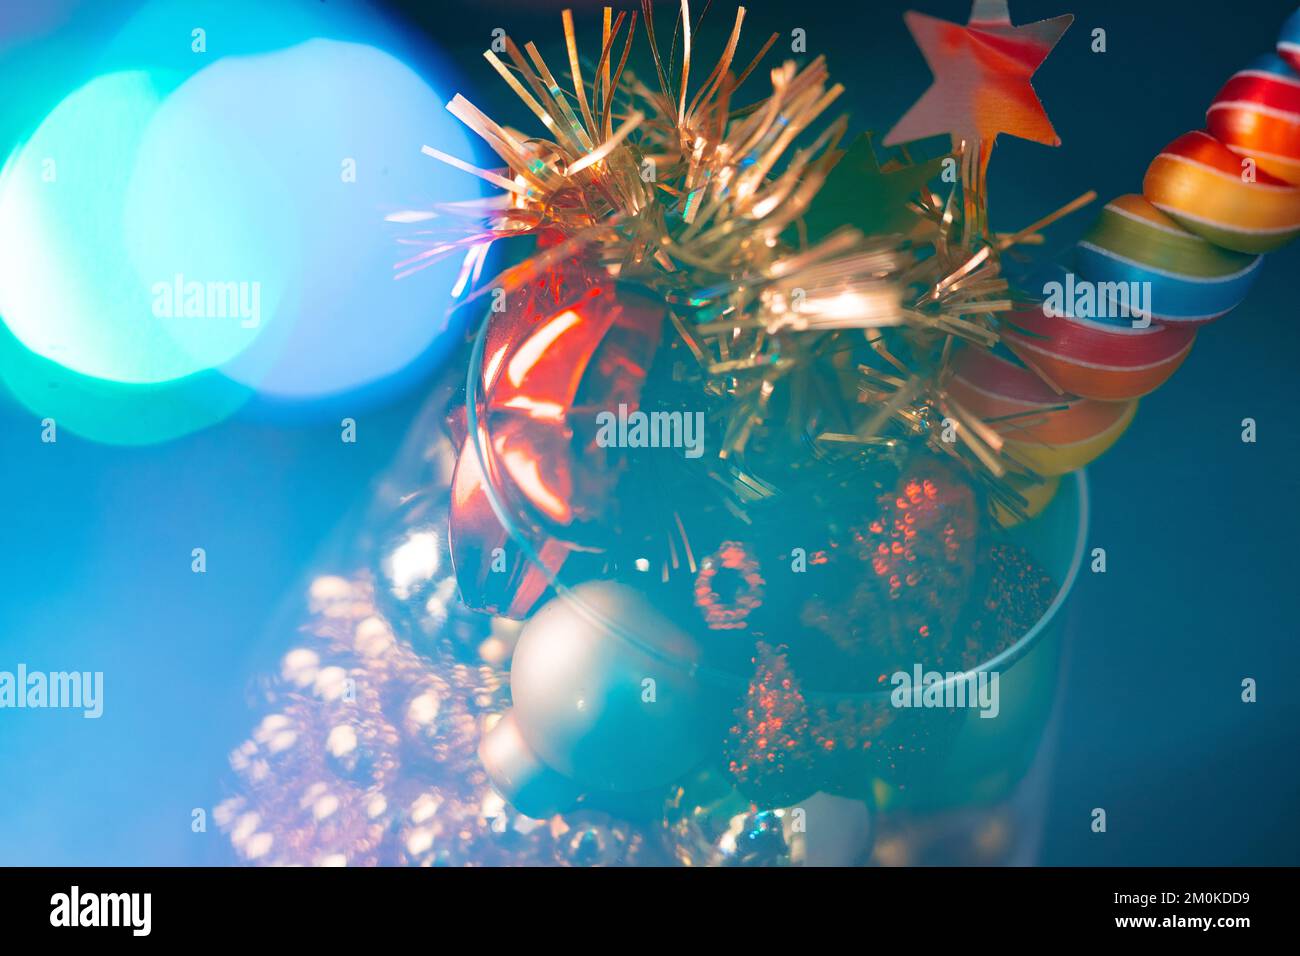 Natale sfondo vacanza con decorazione festiva bokeh shot Foto Stock